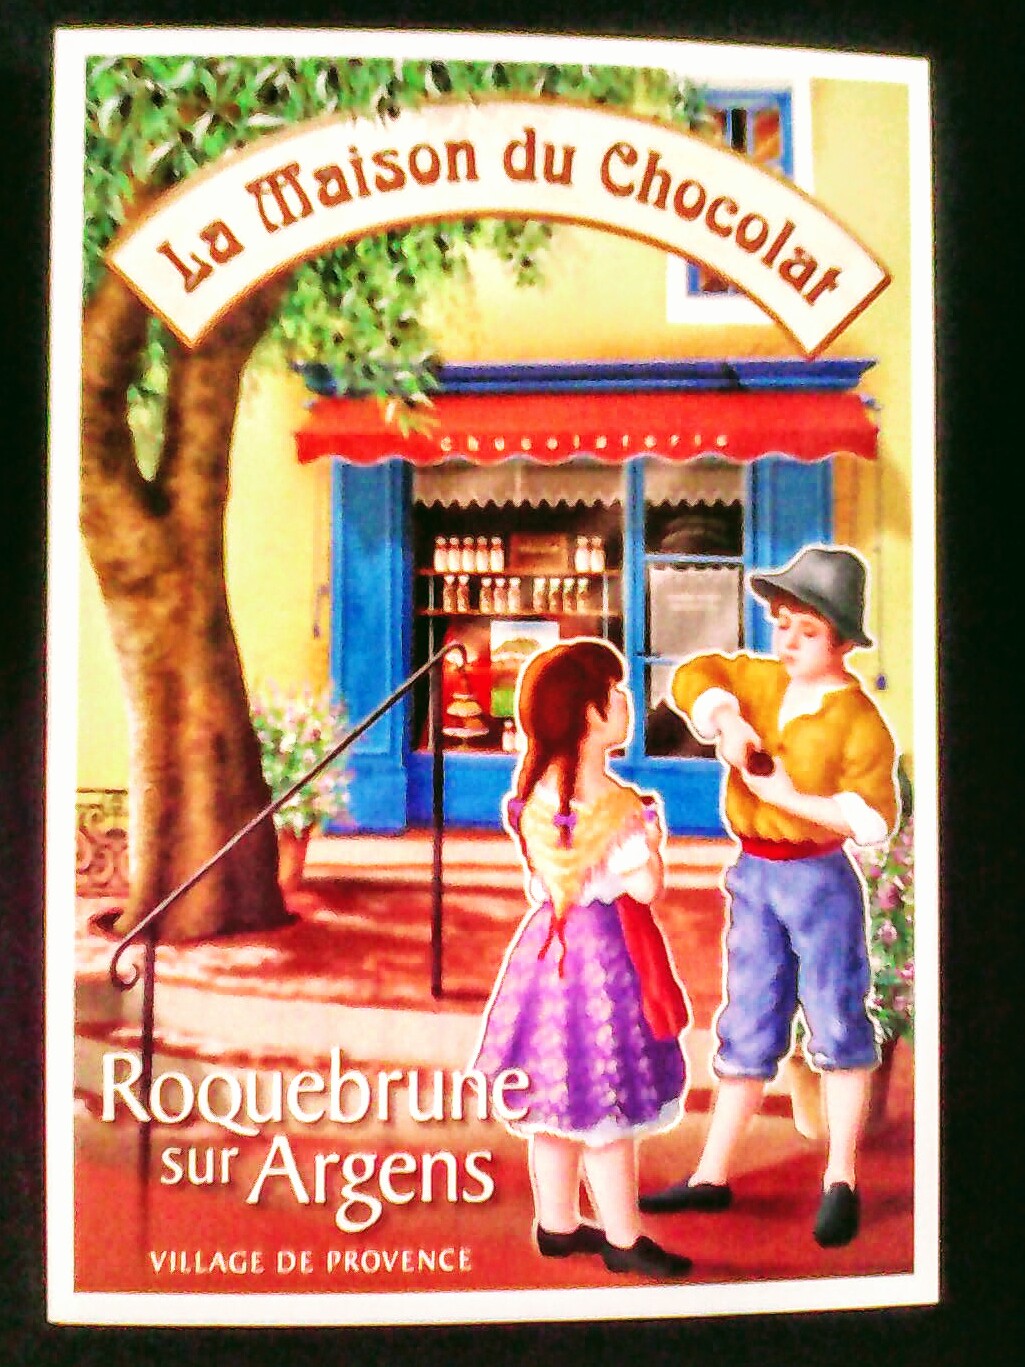 La Maison Du Chocolat
Roquebrune-sur-Argens